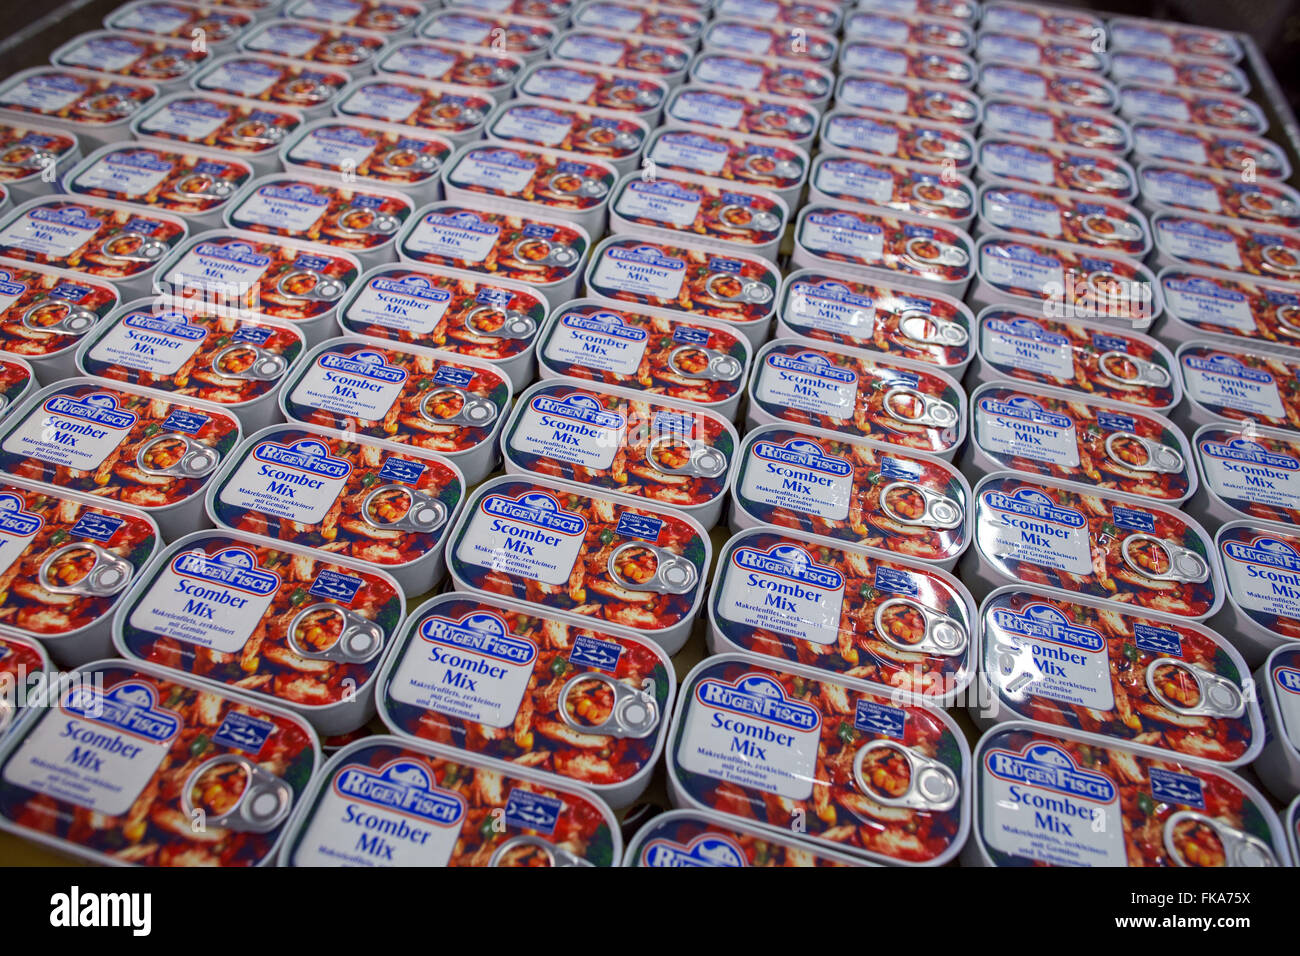 Karlsruhe, Allemagne. 3e Mar, 2016. Conserves de poisson peut être vu à Rügen Fisch AG in Sassnitz, Allemagne, 3 mars 2016. Selon l'information de l'entreprise, 70 millions de boîtes de crème de tomates en filet de maquereau, hareng au curry-ananas-sauce, scomber mix et d'autres sortes sont produits chaque année. L'entreprise est leader du marché de l'Allemagne avec d'autres usines à Luebeck, Rostock et la Lituanie. Début février 2016, transformateur de poisson asiatique Thai Union européenne ont acheté 51  % des actions pour 42,2 millions d'Euros. PHOTO : JENS BUETTNER/dpa/Alamy Live News Banque D'Images